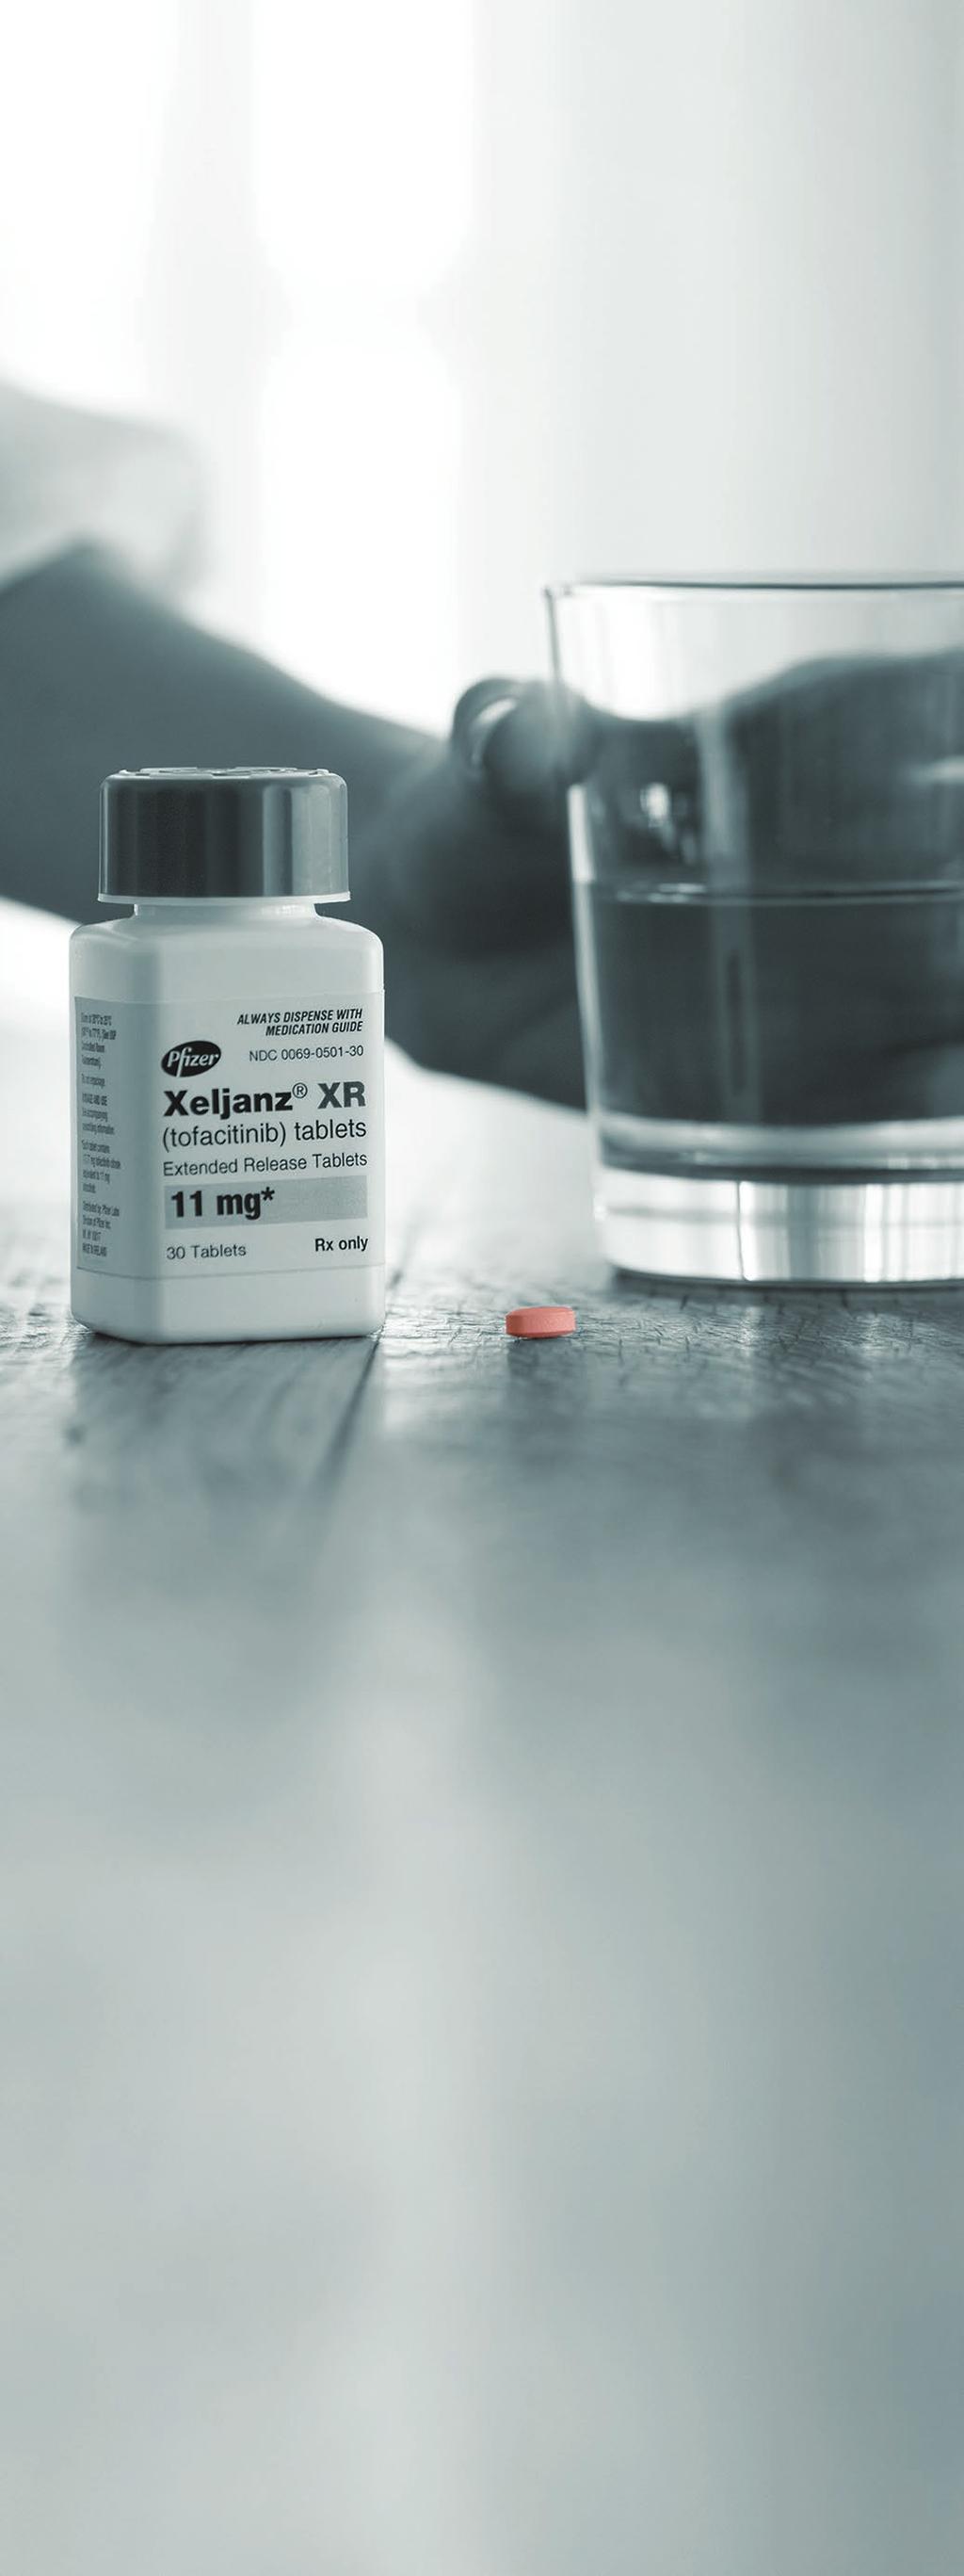 Qué es XELJANZ? XELJANZ (tofacitinib) es un medicamento recetado conocido como inhibidor de la cinasa de Janus (JAK).